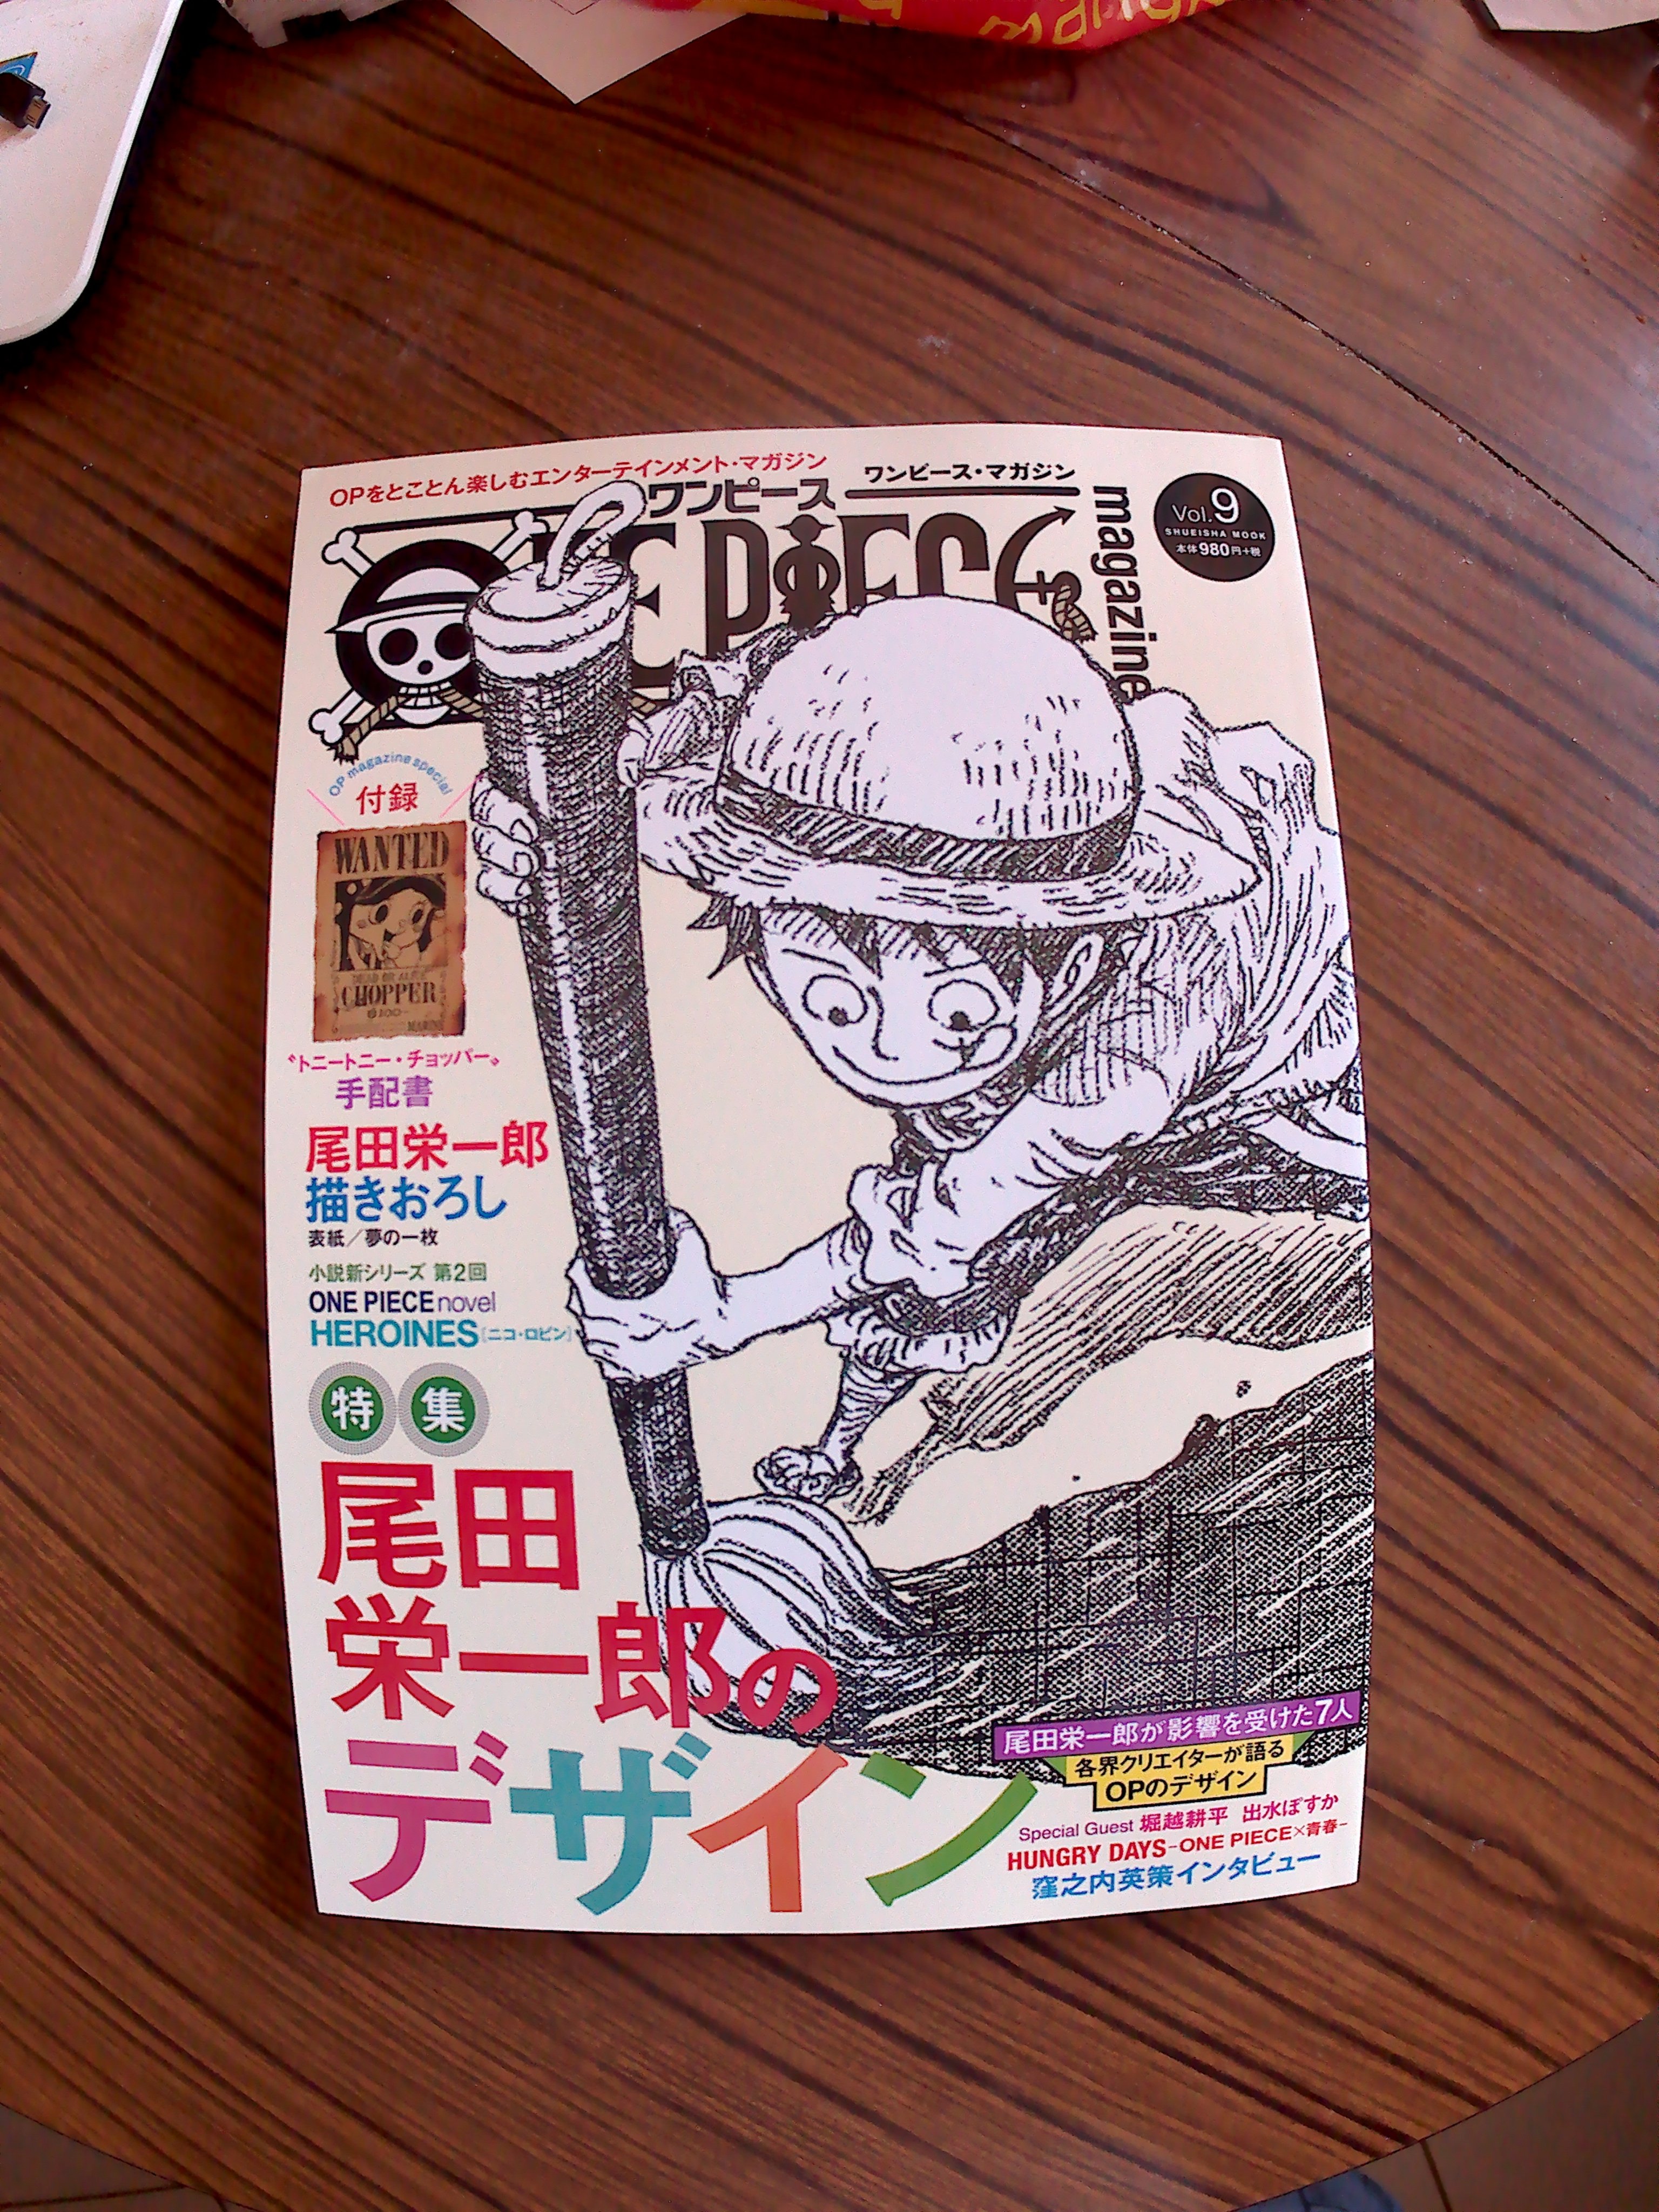 Baker ベイカー One Piece Fan Des Cartes A Jouer Du Film Gold Avec 2 Cartes Joker Dessine Par Notre Mangaka Et Le Op Mag Vol 9 Enfin Je L Ai